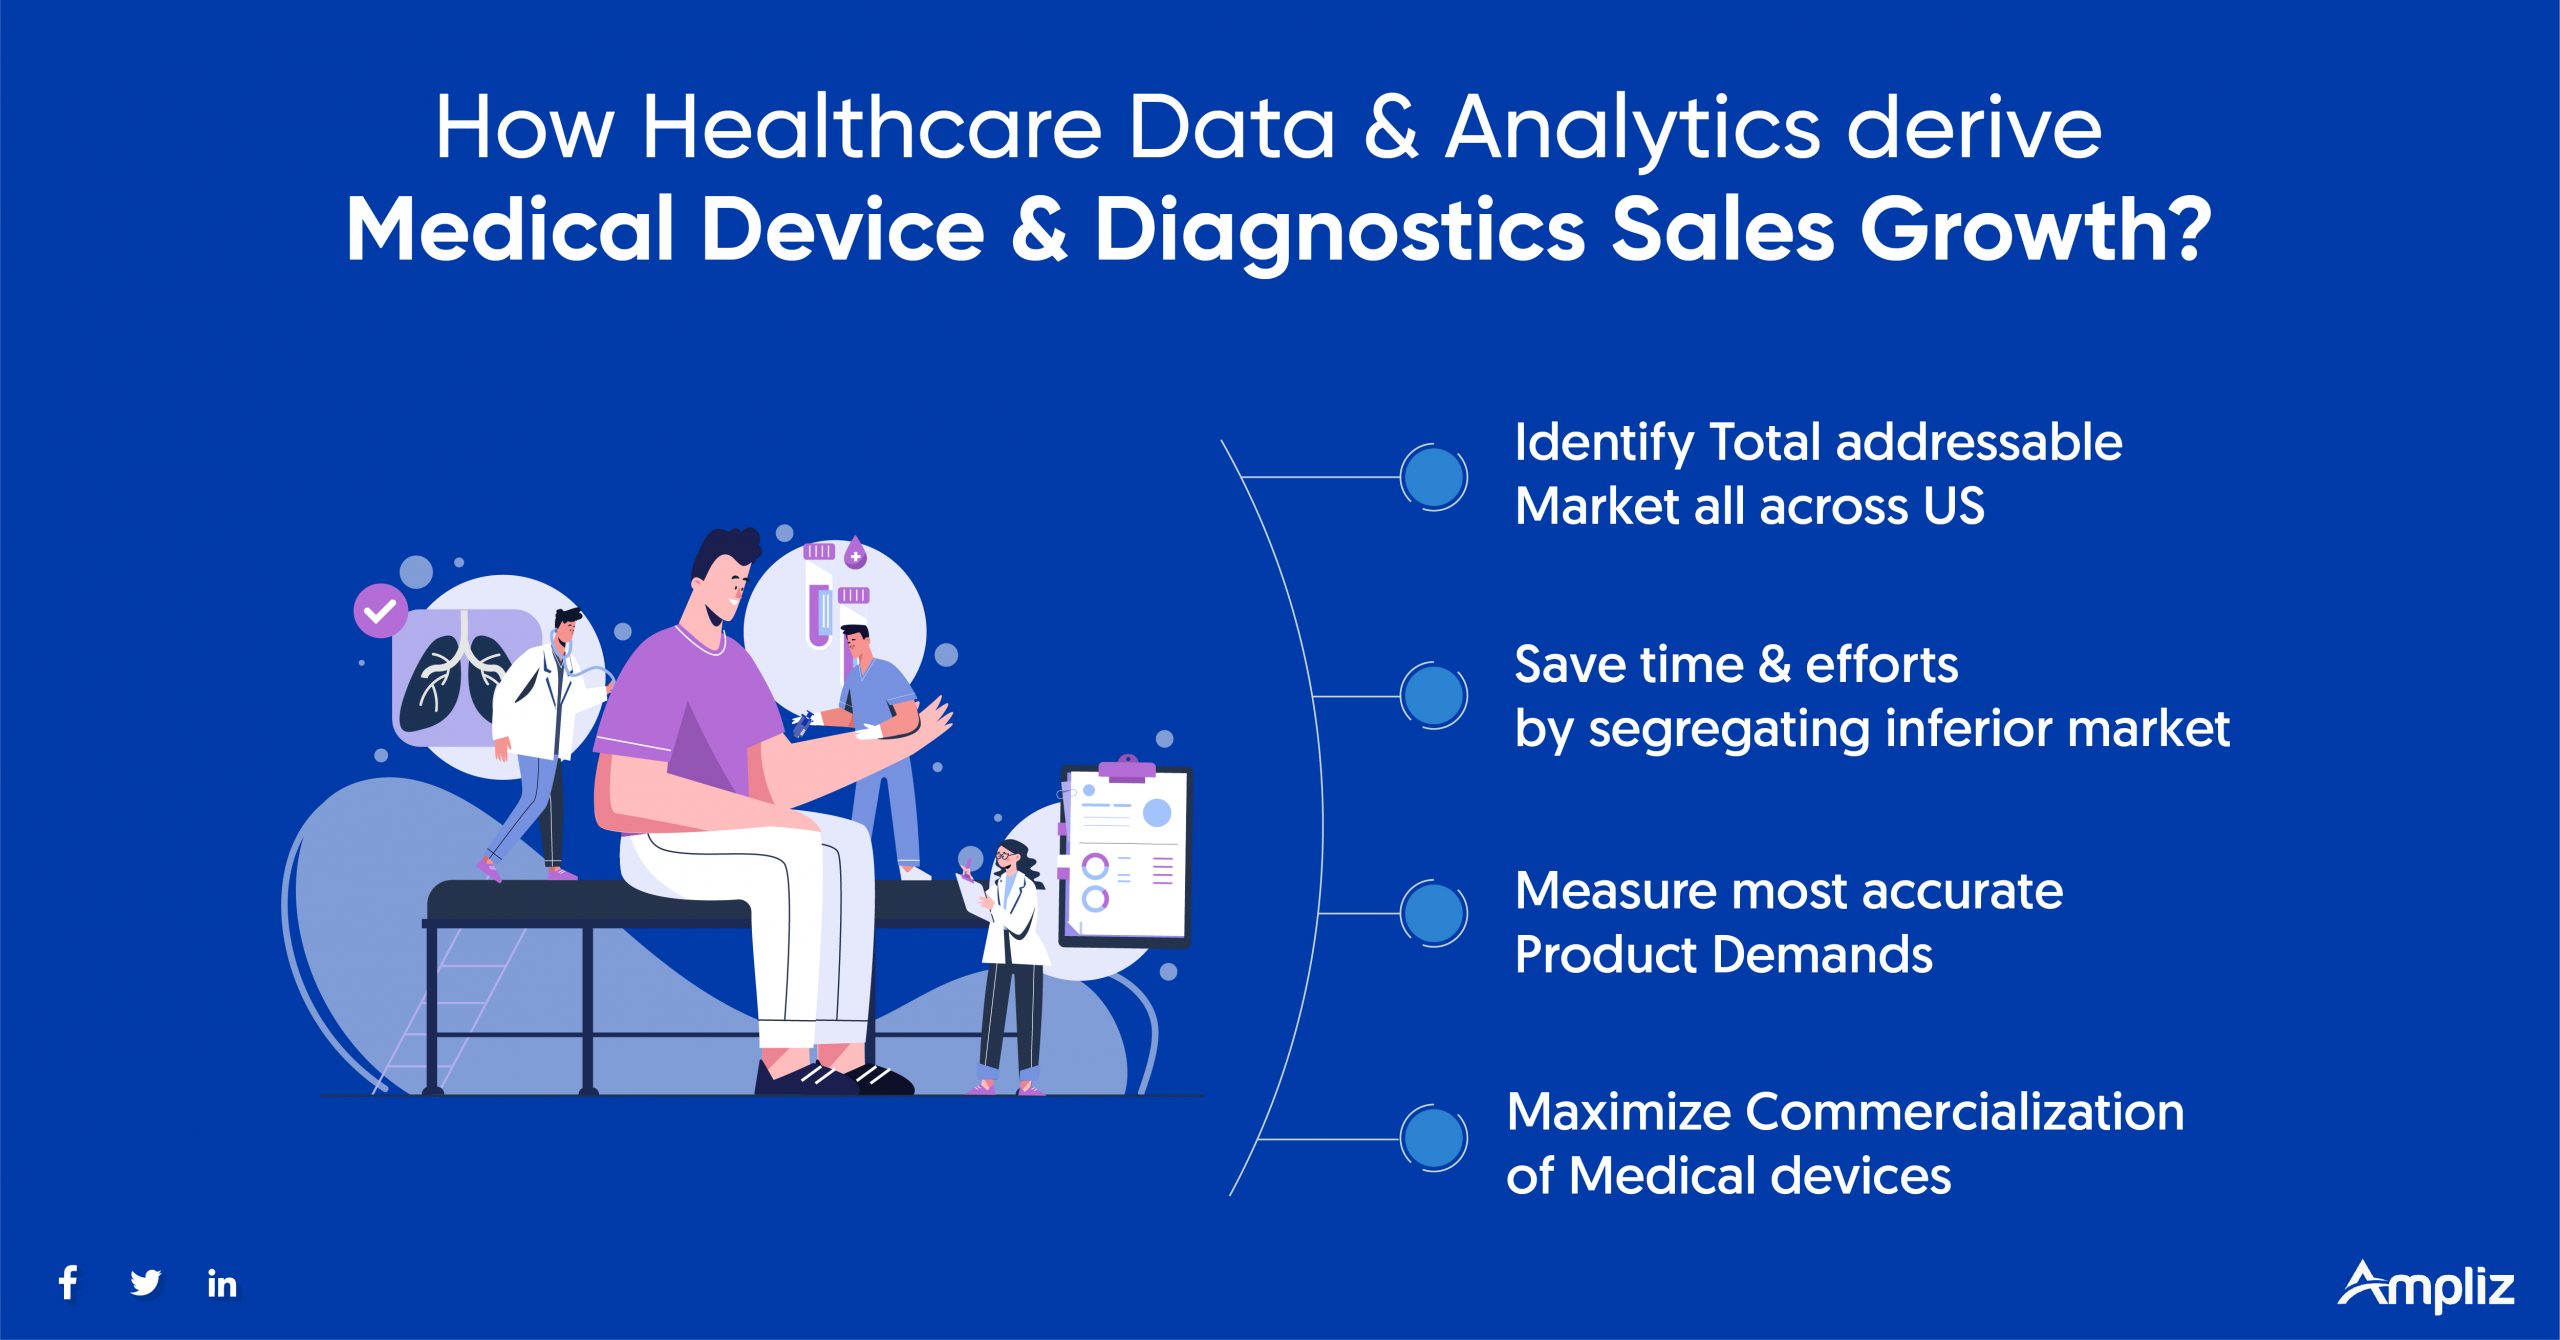 Medical Device & Diagnostics sales